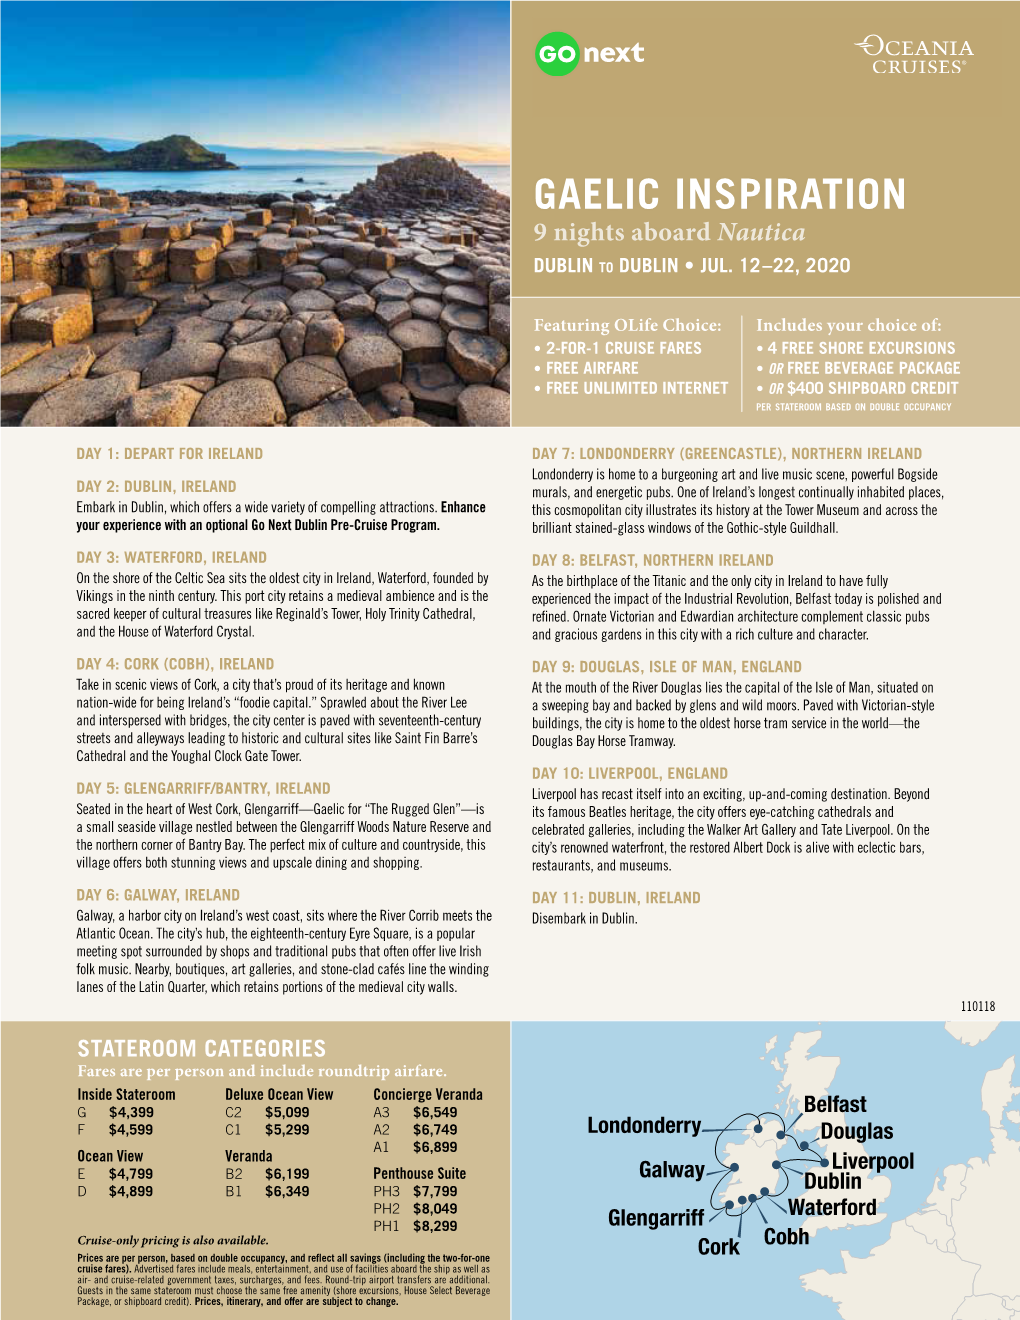 GAELIC INSPIRATION 9 Nights Aboard Nautica DUBLIN to DUBLIN • JUL